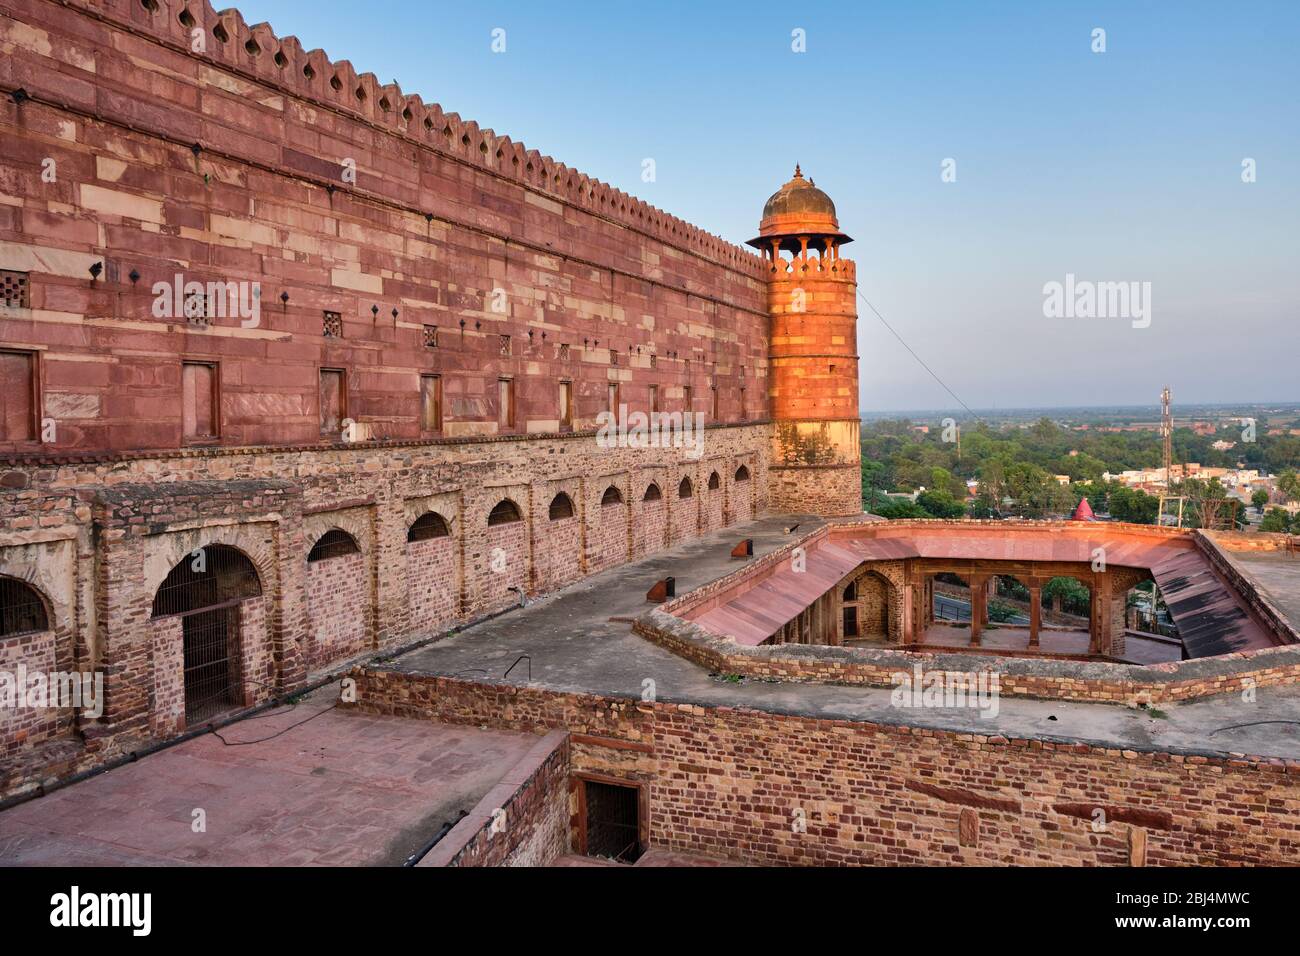 Fatehpur Sikri, ehemalige Hauptstadt des Mogulreiches, gegründet 1571 von Kaiser Akbar, UNESCO-Weltkulturerbe in Agra, Uttar Pradesh, Indien Stockfoto